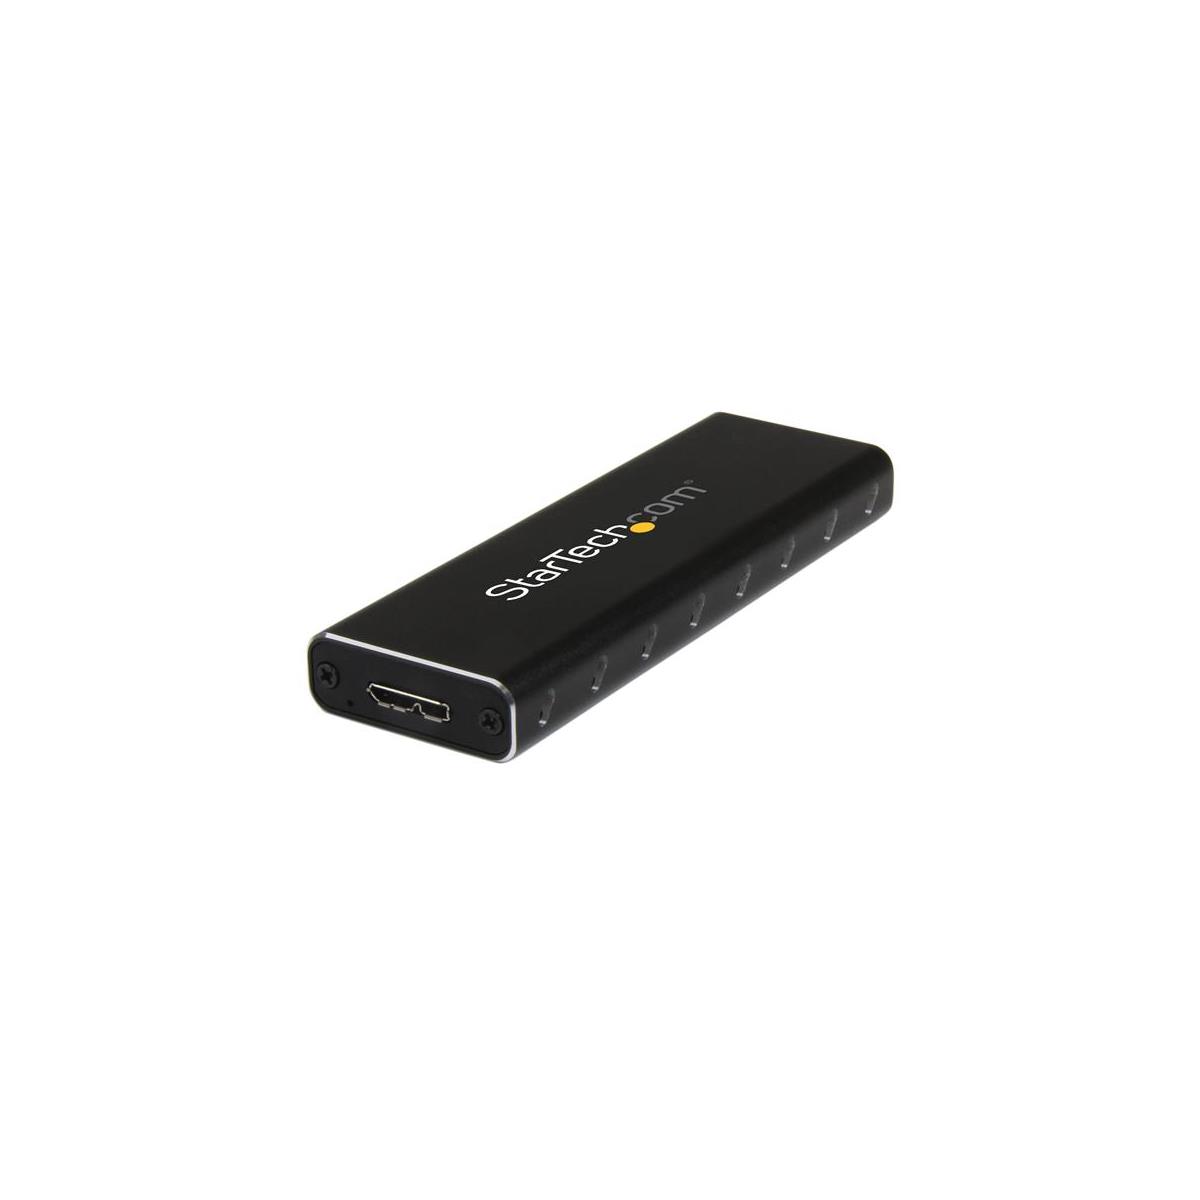 StarTech USB 3.0 to M.2 NGFF Внешний твердотельный накопитель в алюминиевом корпусе с UASP